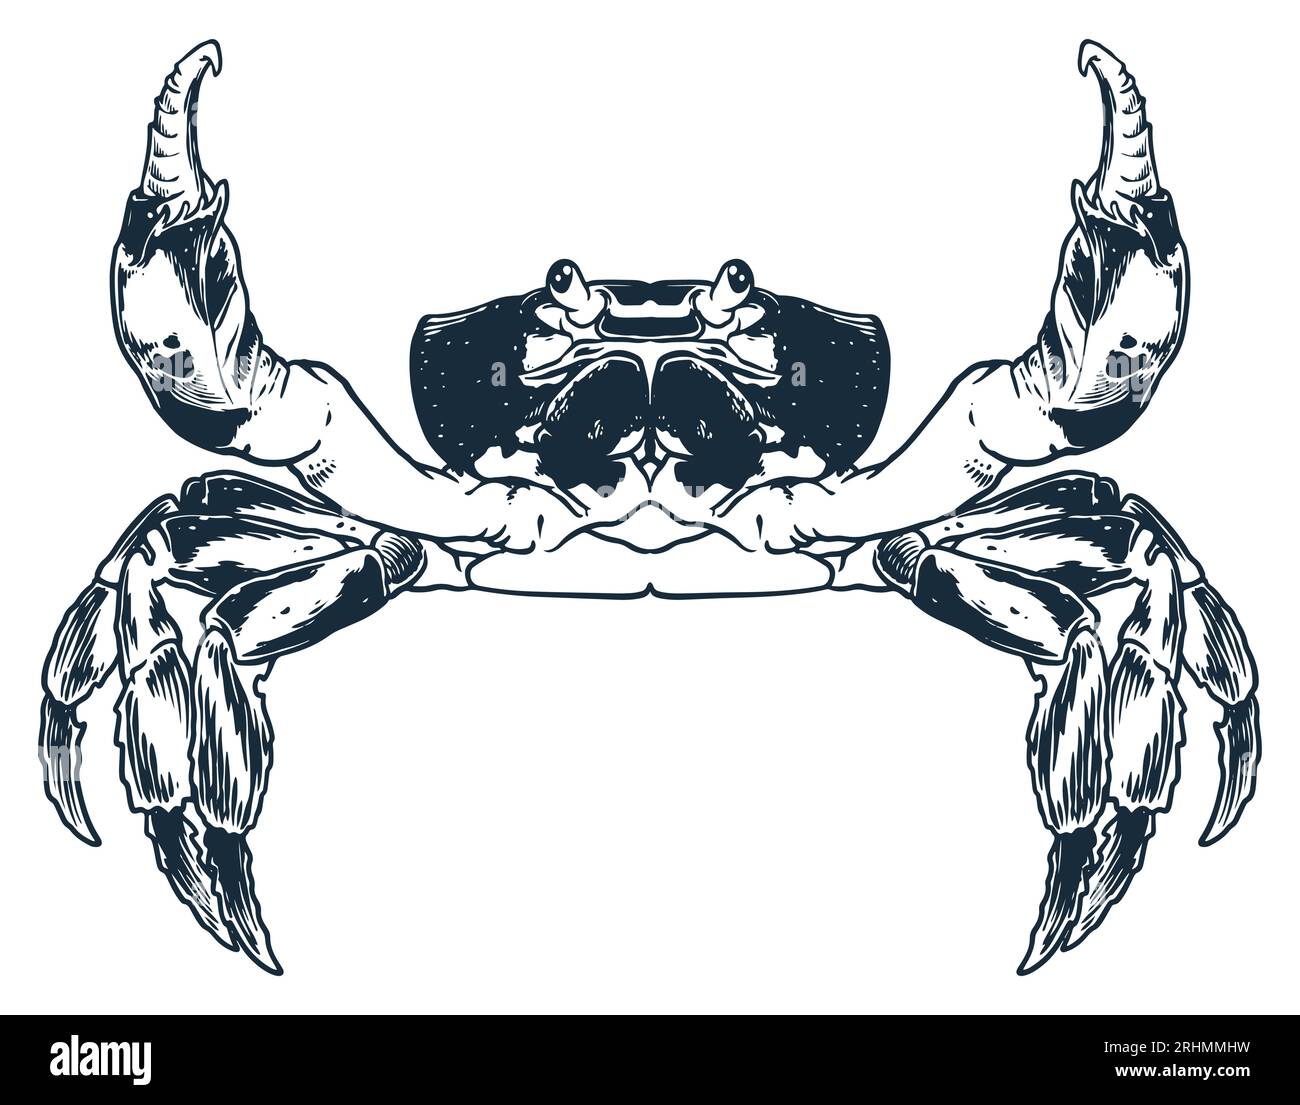 Meeresfrüchte-Tier-Krabben-Gravur-Zeichnungsvektor. Handskizze im Vintage-Stil. Nahrung Tier Meer isoliert auf weißem Hintergrund. Stock Vektor